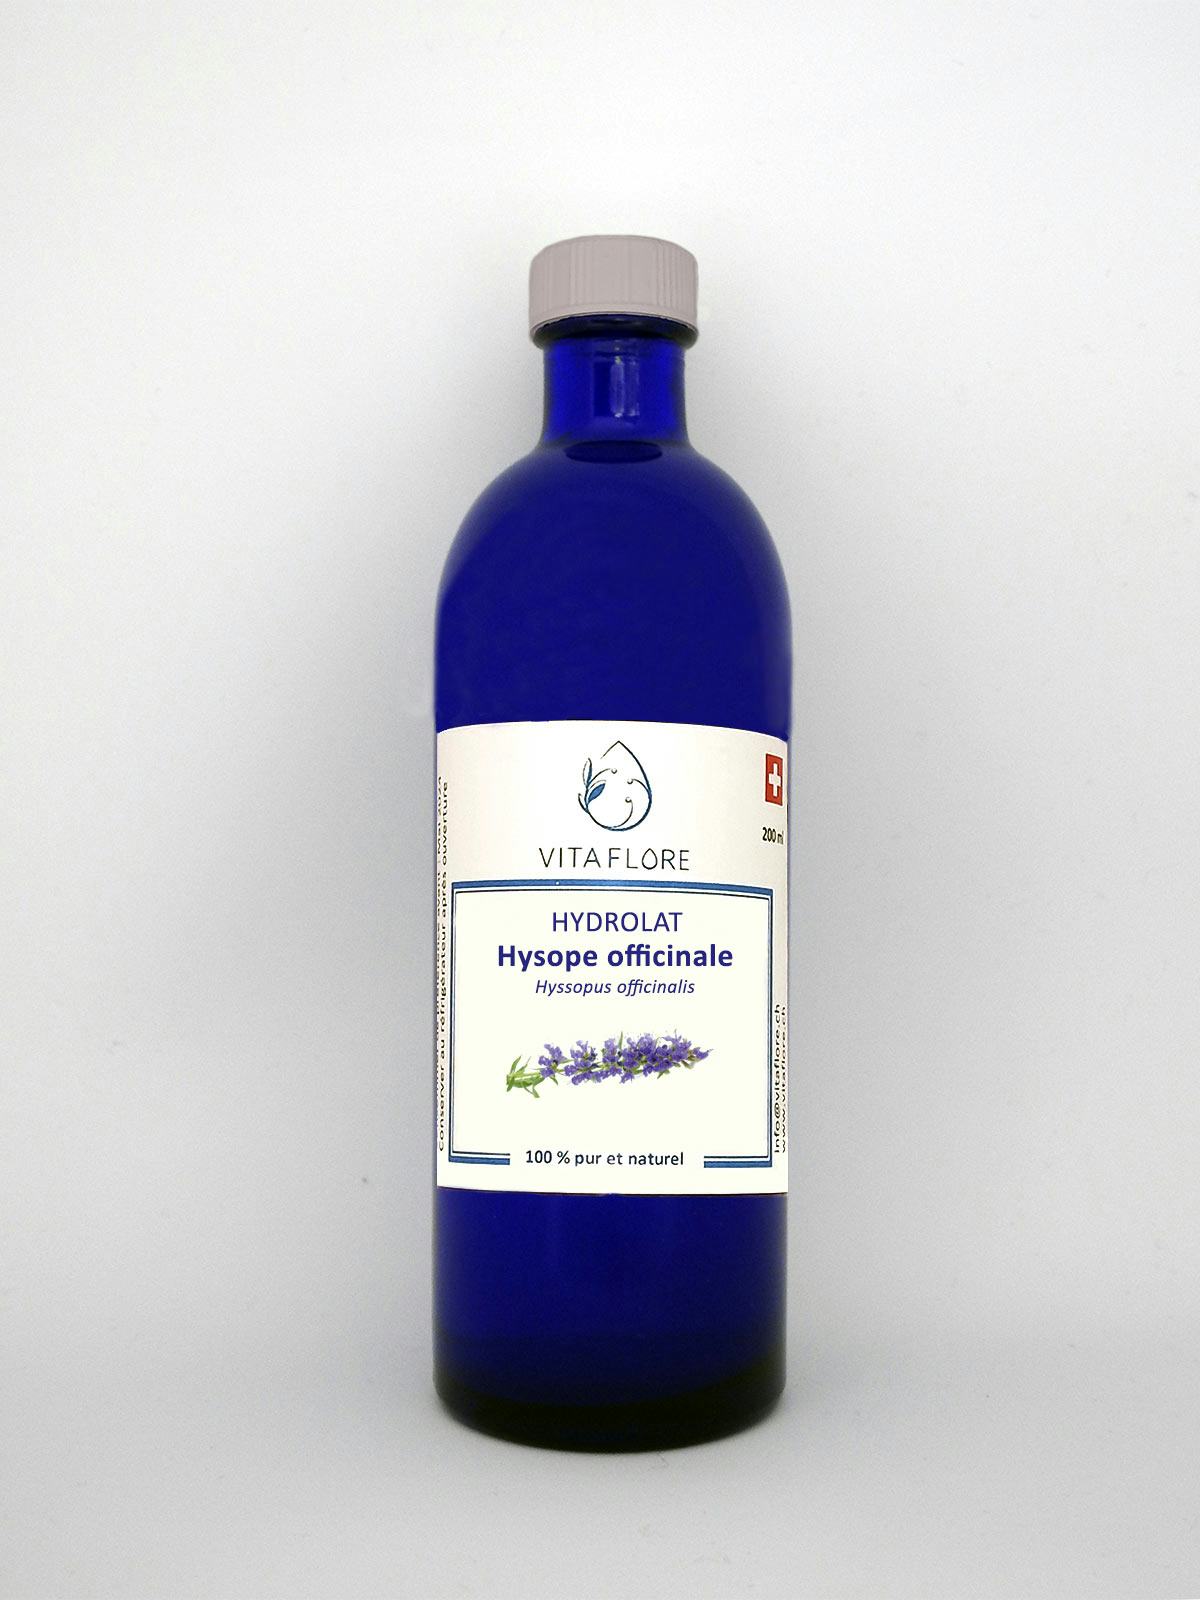 Hydrolat Hysope officinale, handwerkliches Produkt für den Direktverkauf in der Schweiz